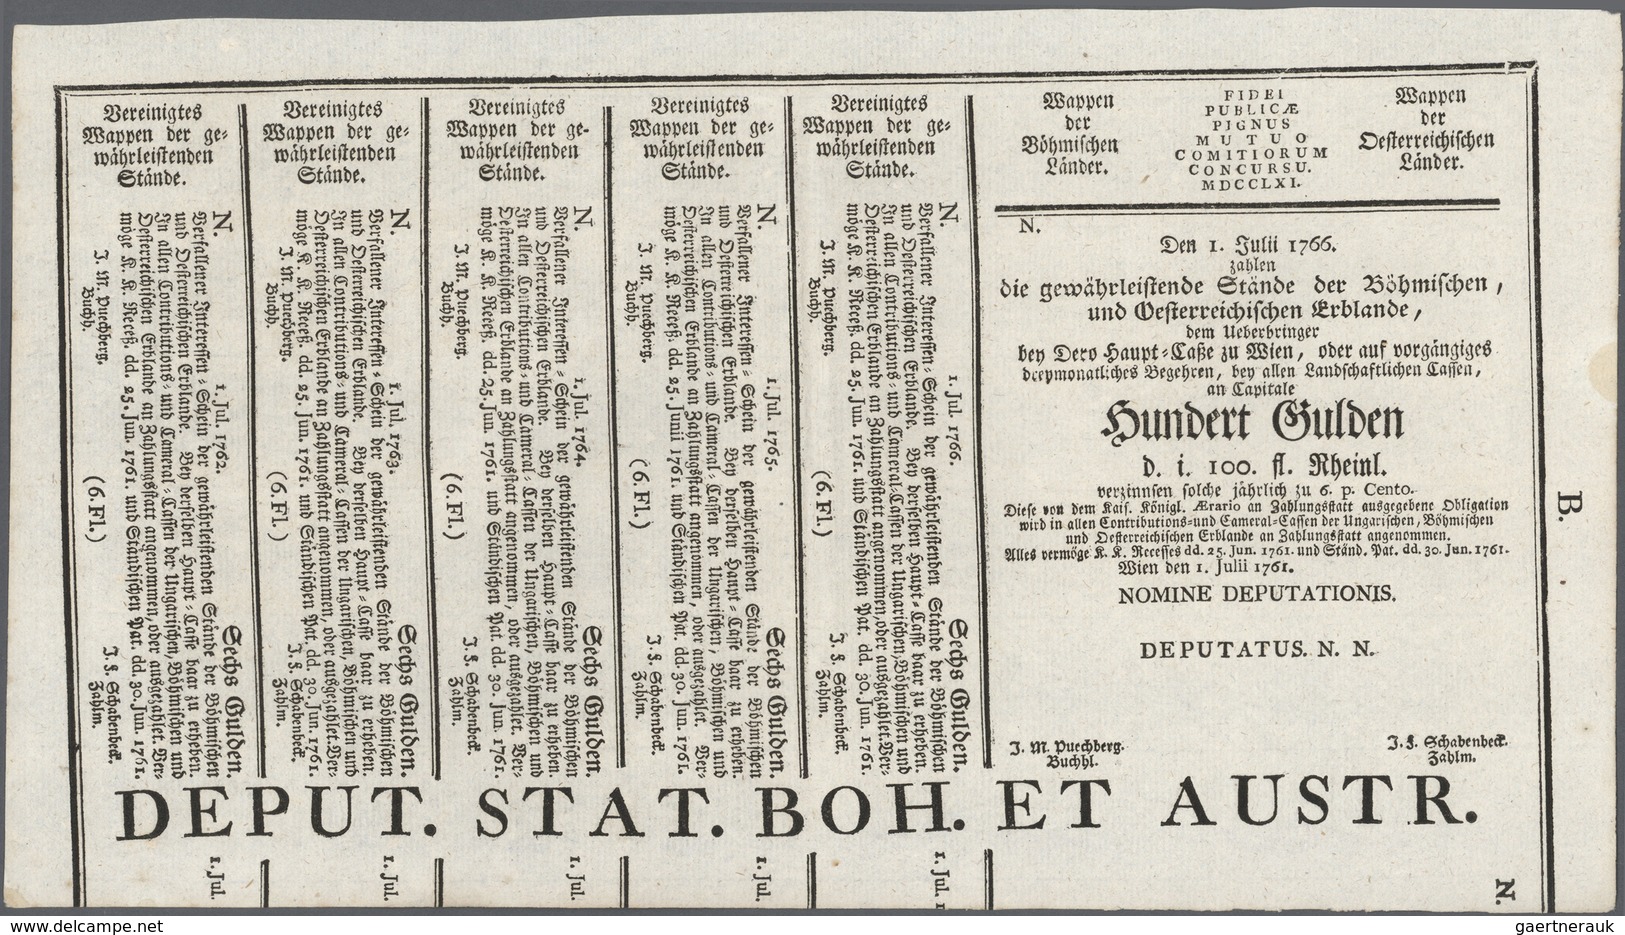 Austria / Österreich: 100 Gulden 1761 Obligation Vienna, PR W4b), Complete Sheet In Condition: UNC. - Austria